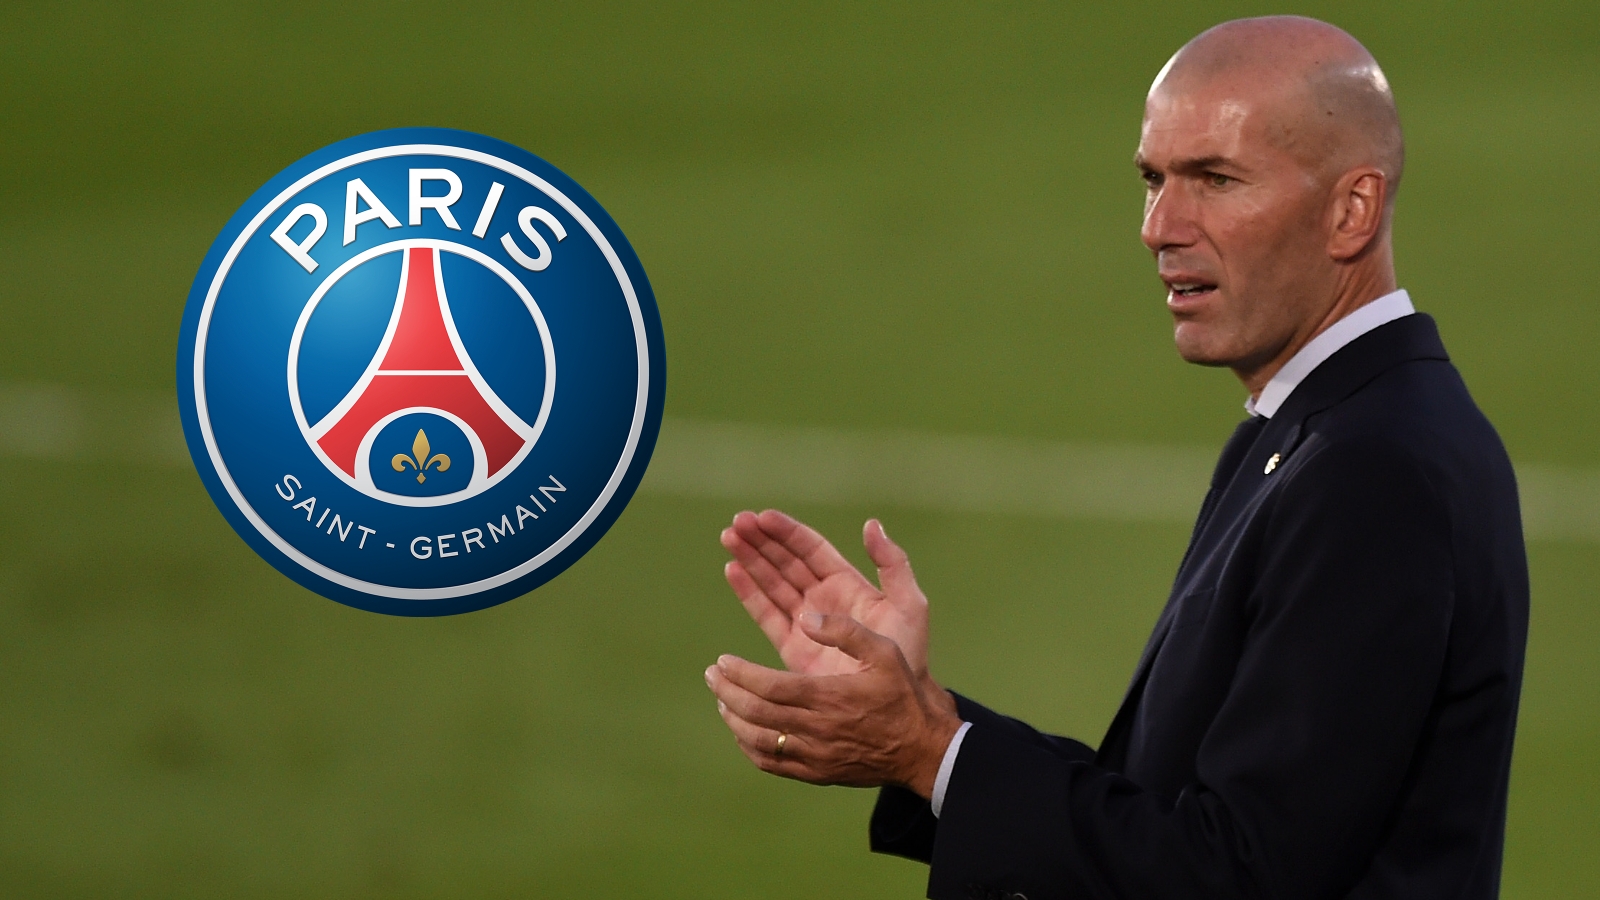 Le PSG identifie un plan B s’il ne parvient pas à engager Zidane